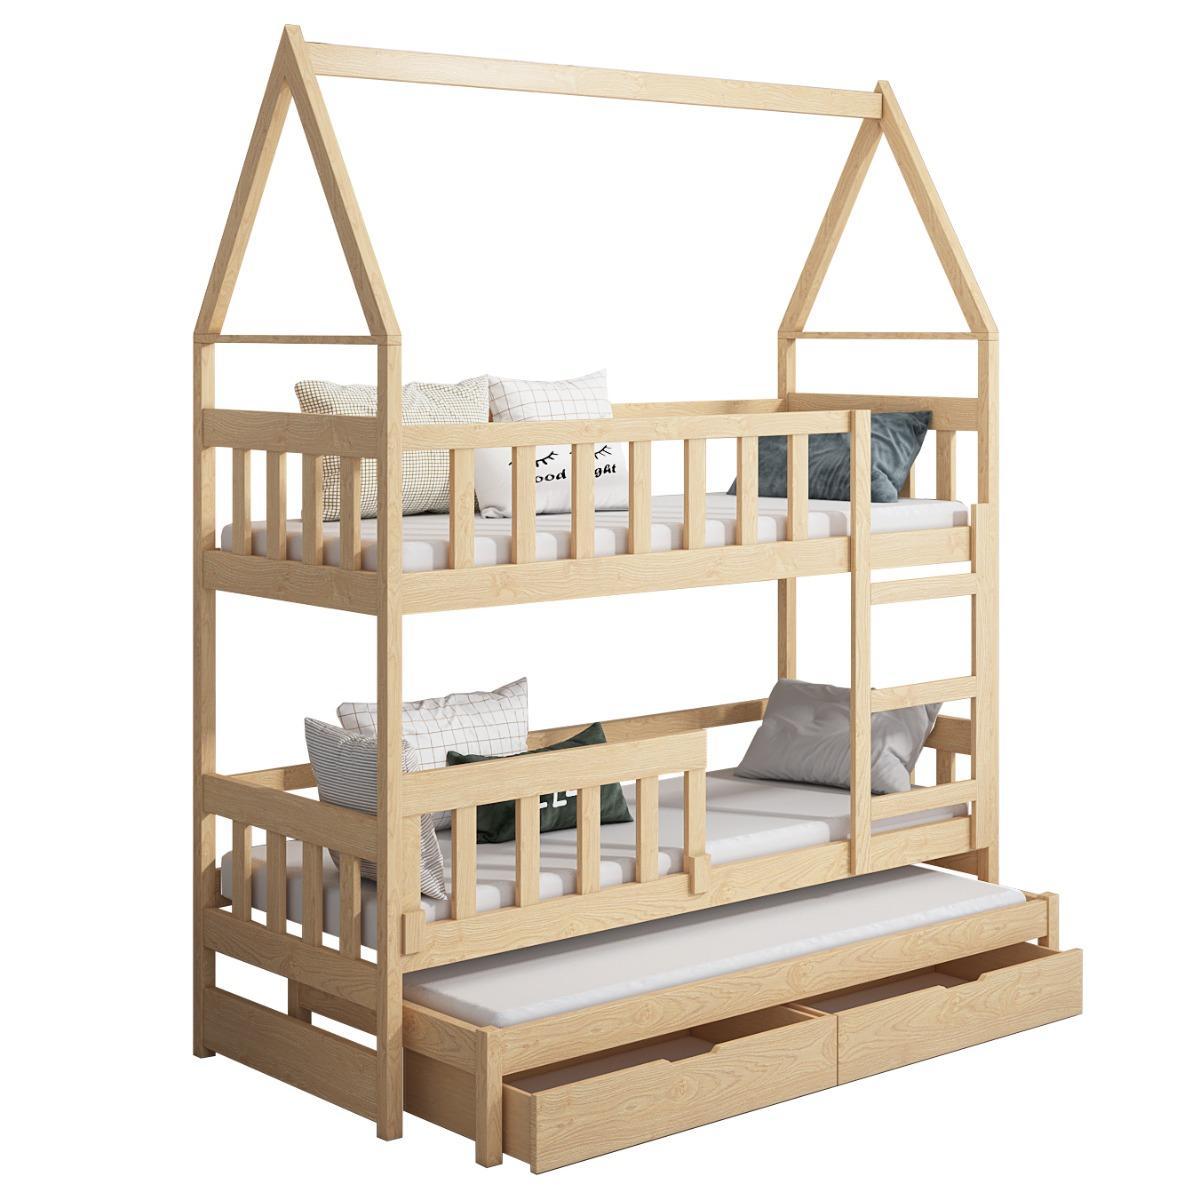 Łóżko piętrowe DOMEK drewno białe miejsce do spania dla 3 osób + materace sprężynowe 180x75 cm w zestawie do pokoju dziecka 5 Full Screen